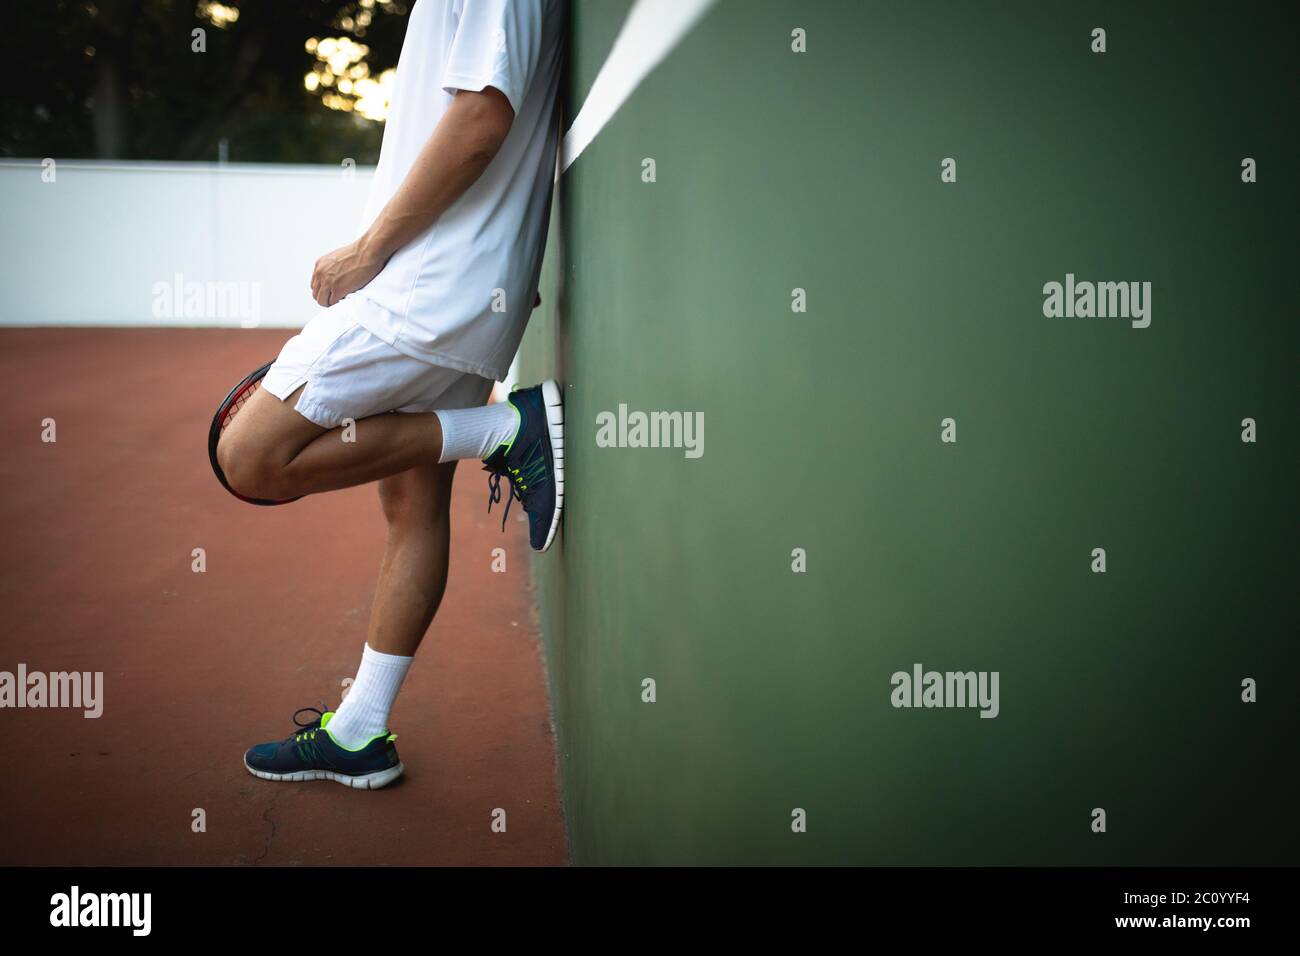 Entrenamiento de hombre caucásico en una cancha de tenis Foto de stock